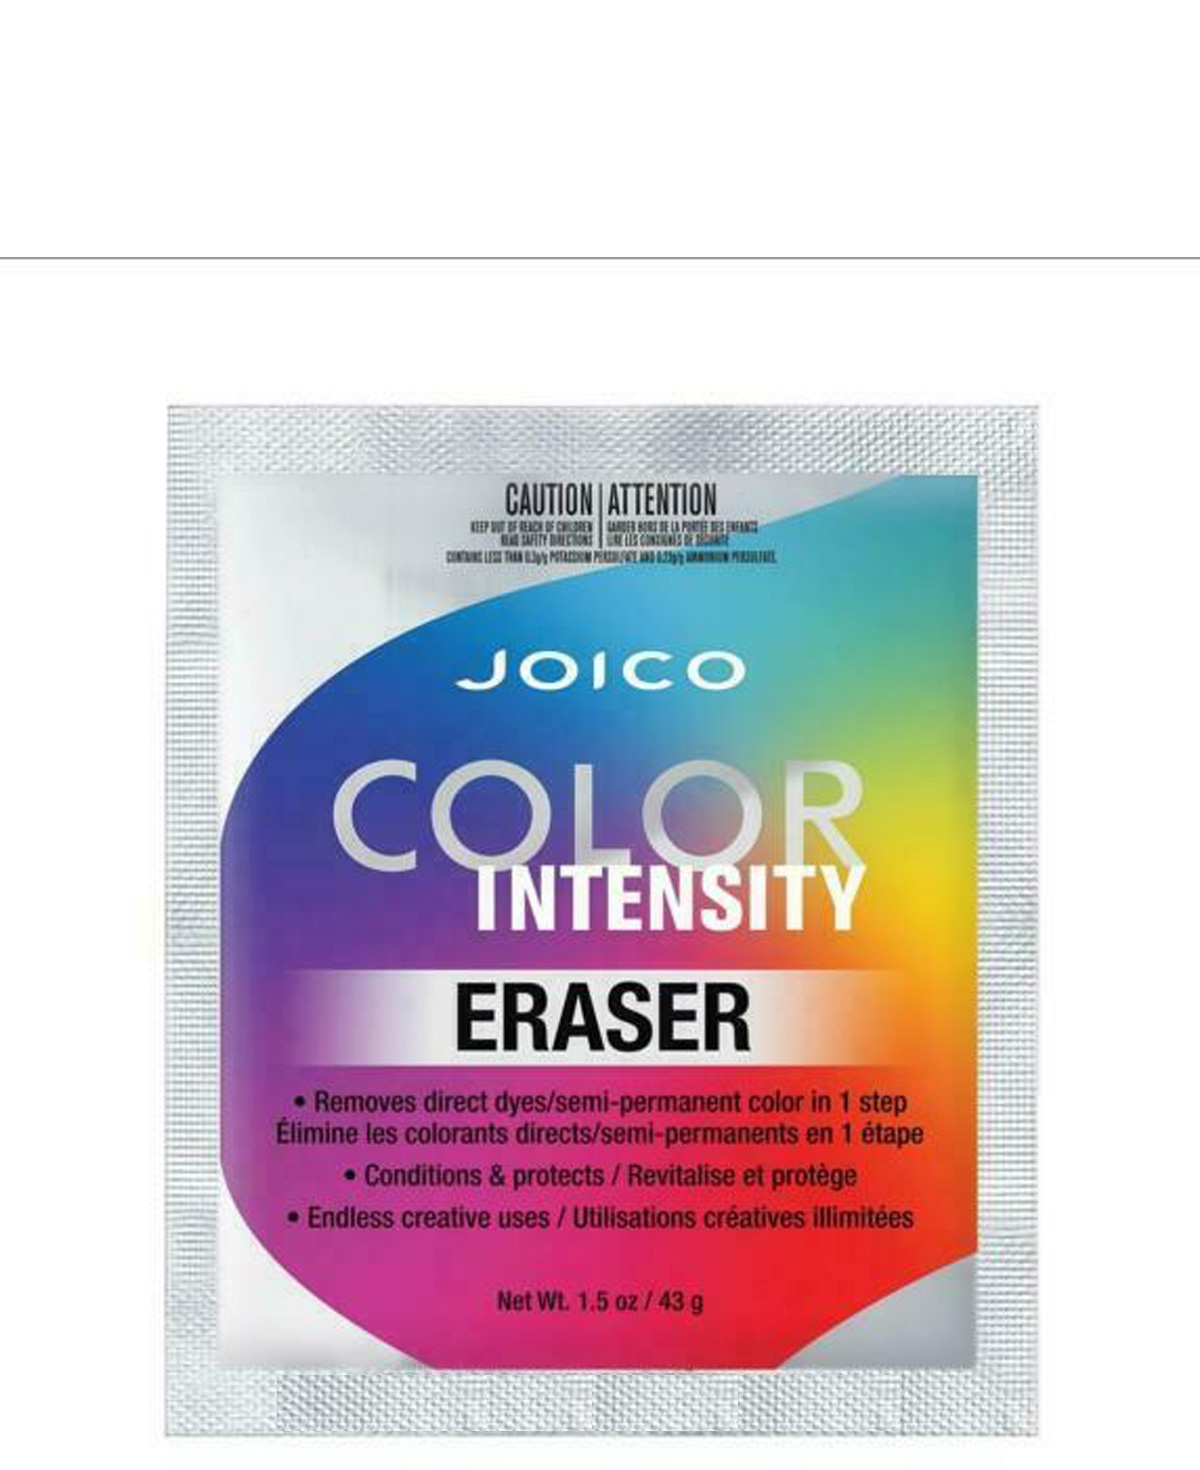 Joico Color Intensity Eraser 43g